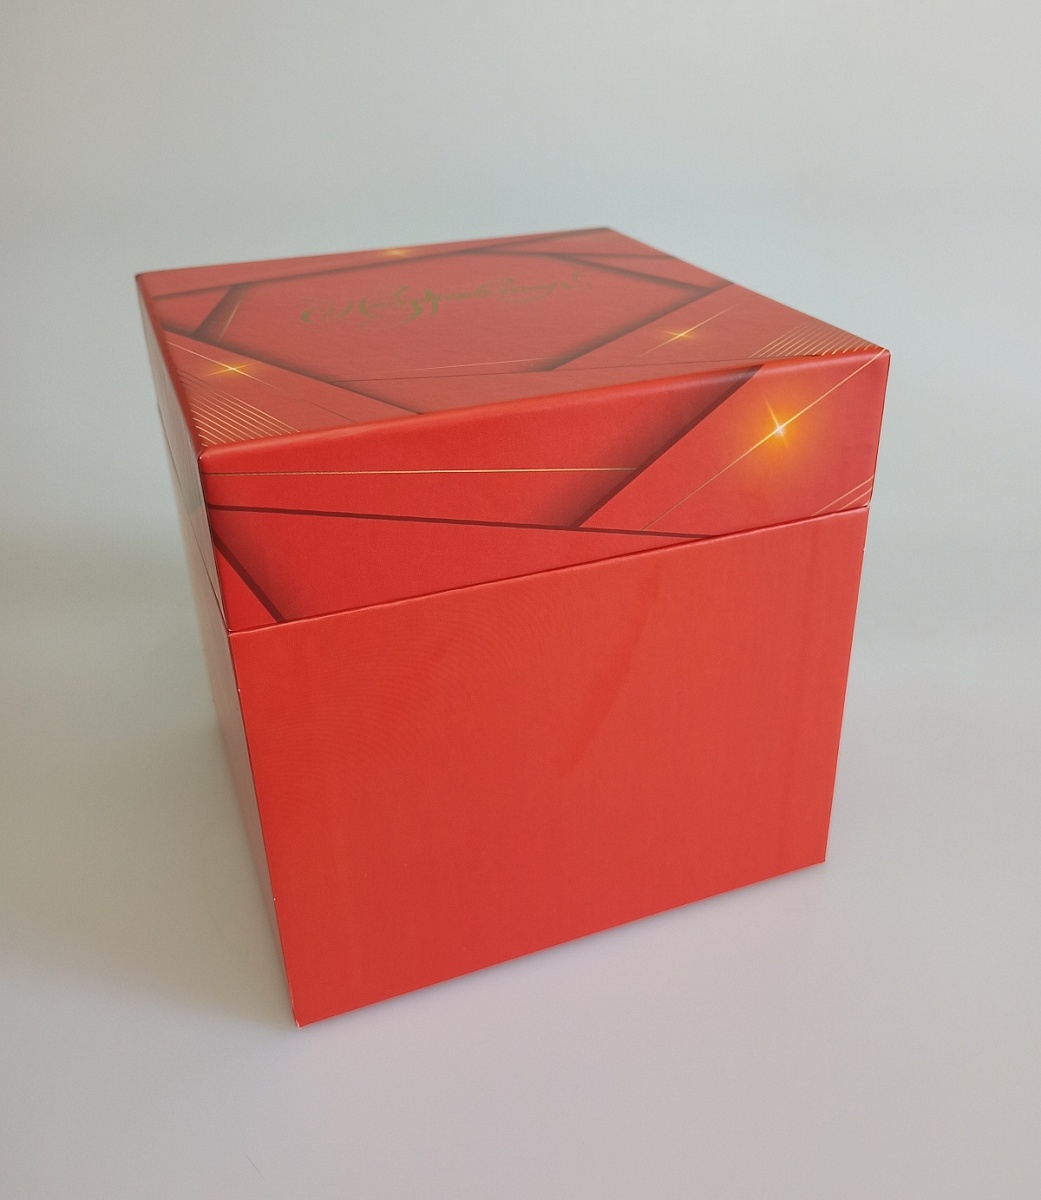 Подарочная коробка крышка-дно, 16 x 16 x 16 см. "Азарт", красный